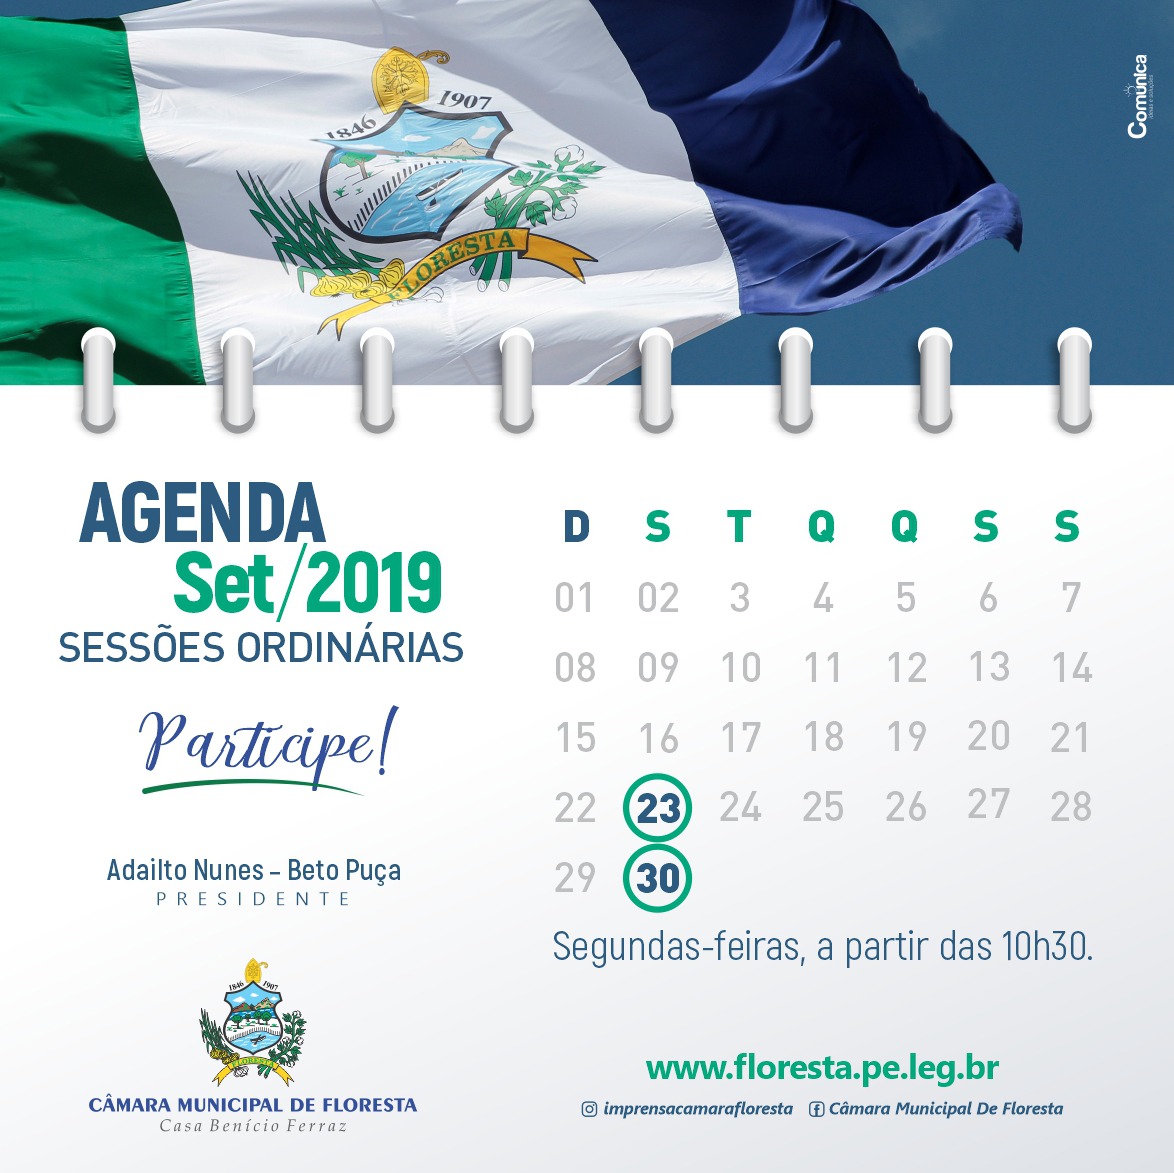 Agenda das Sessões Ordinárias do mês de Setembro